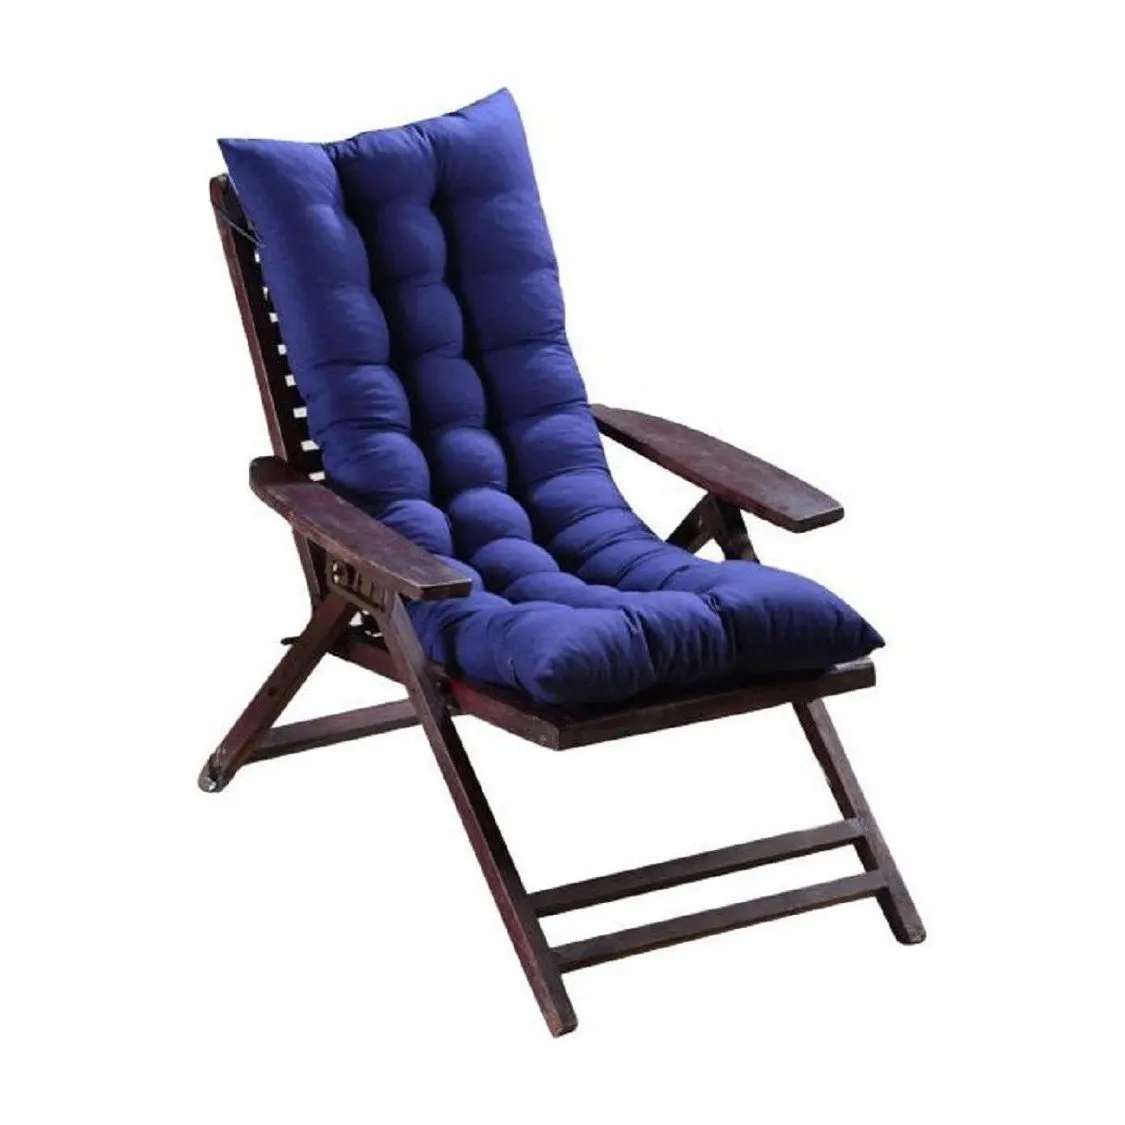 Cheap Blue Chair Cushions, find Blue Chair Cushions deals on line at